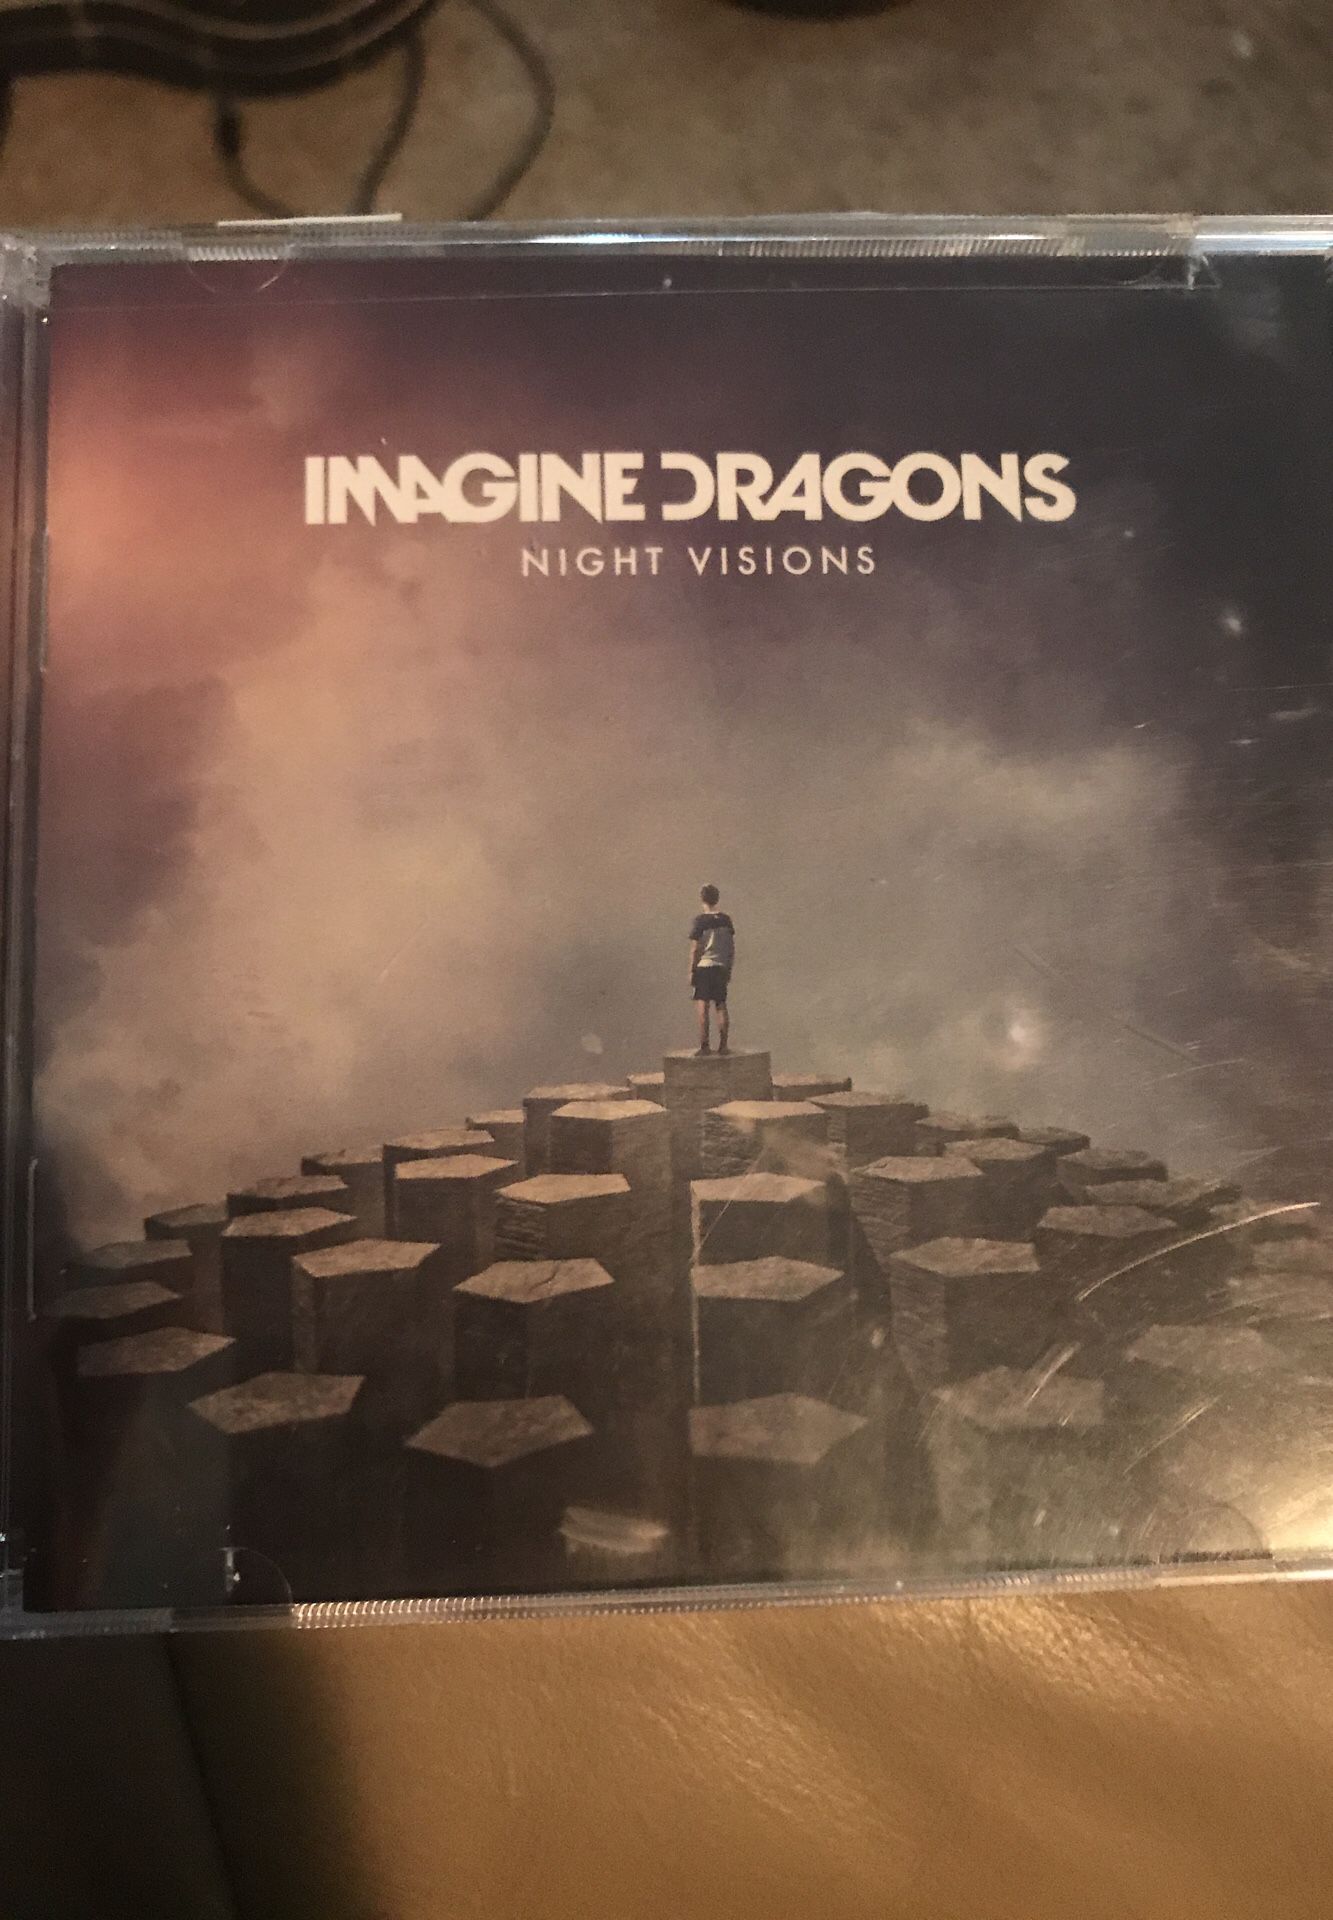 Imagine dragons album